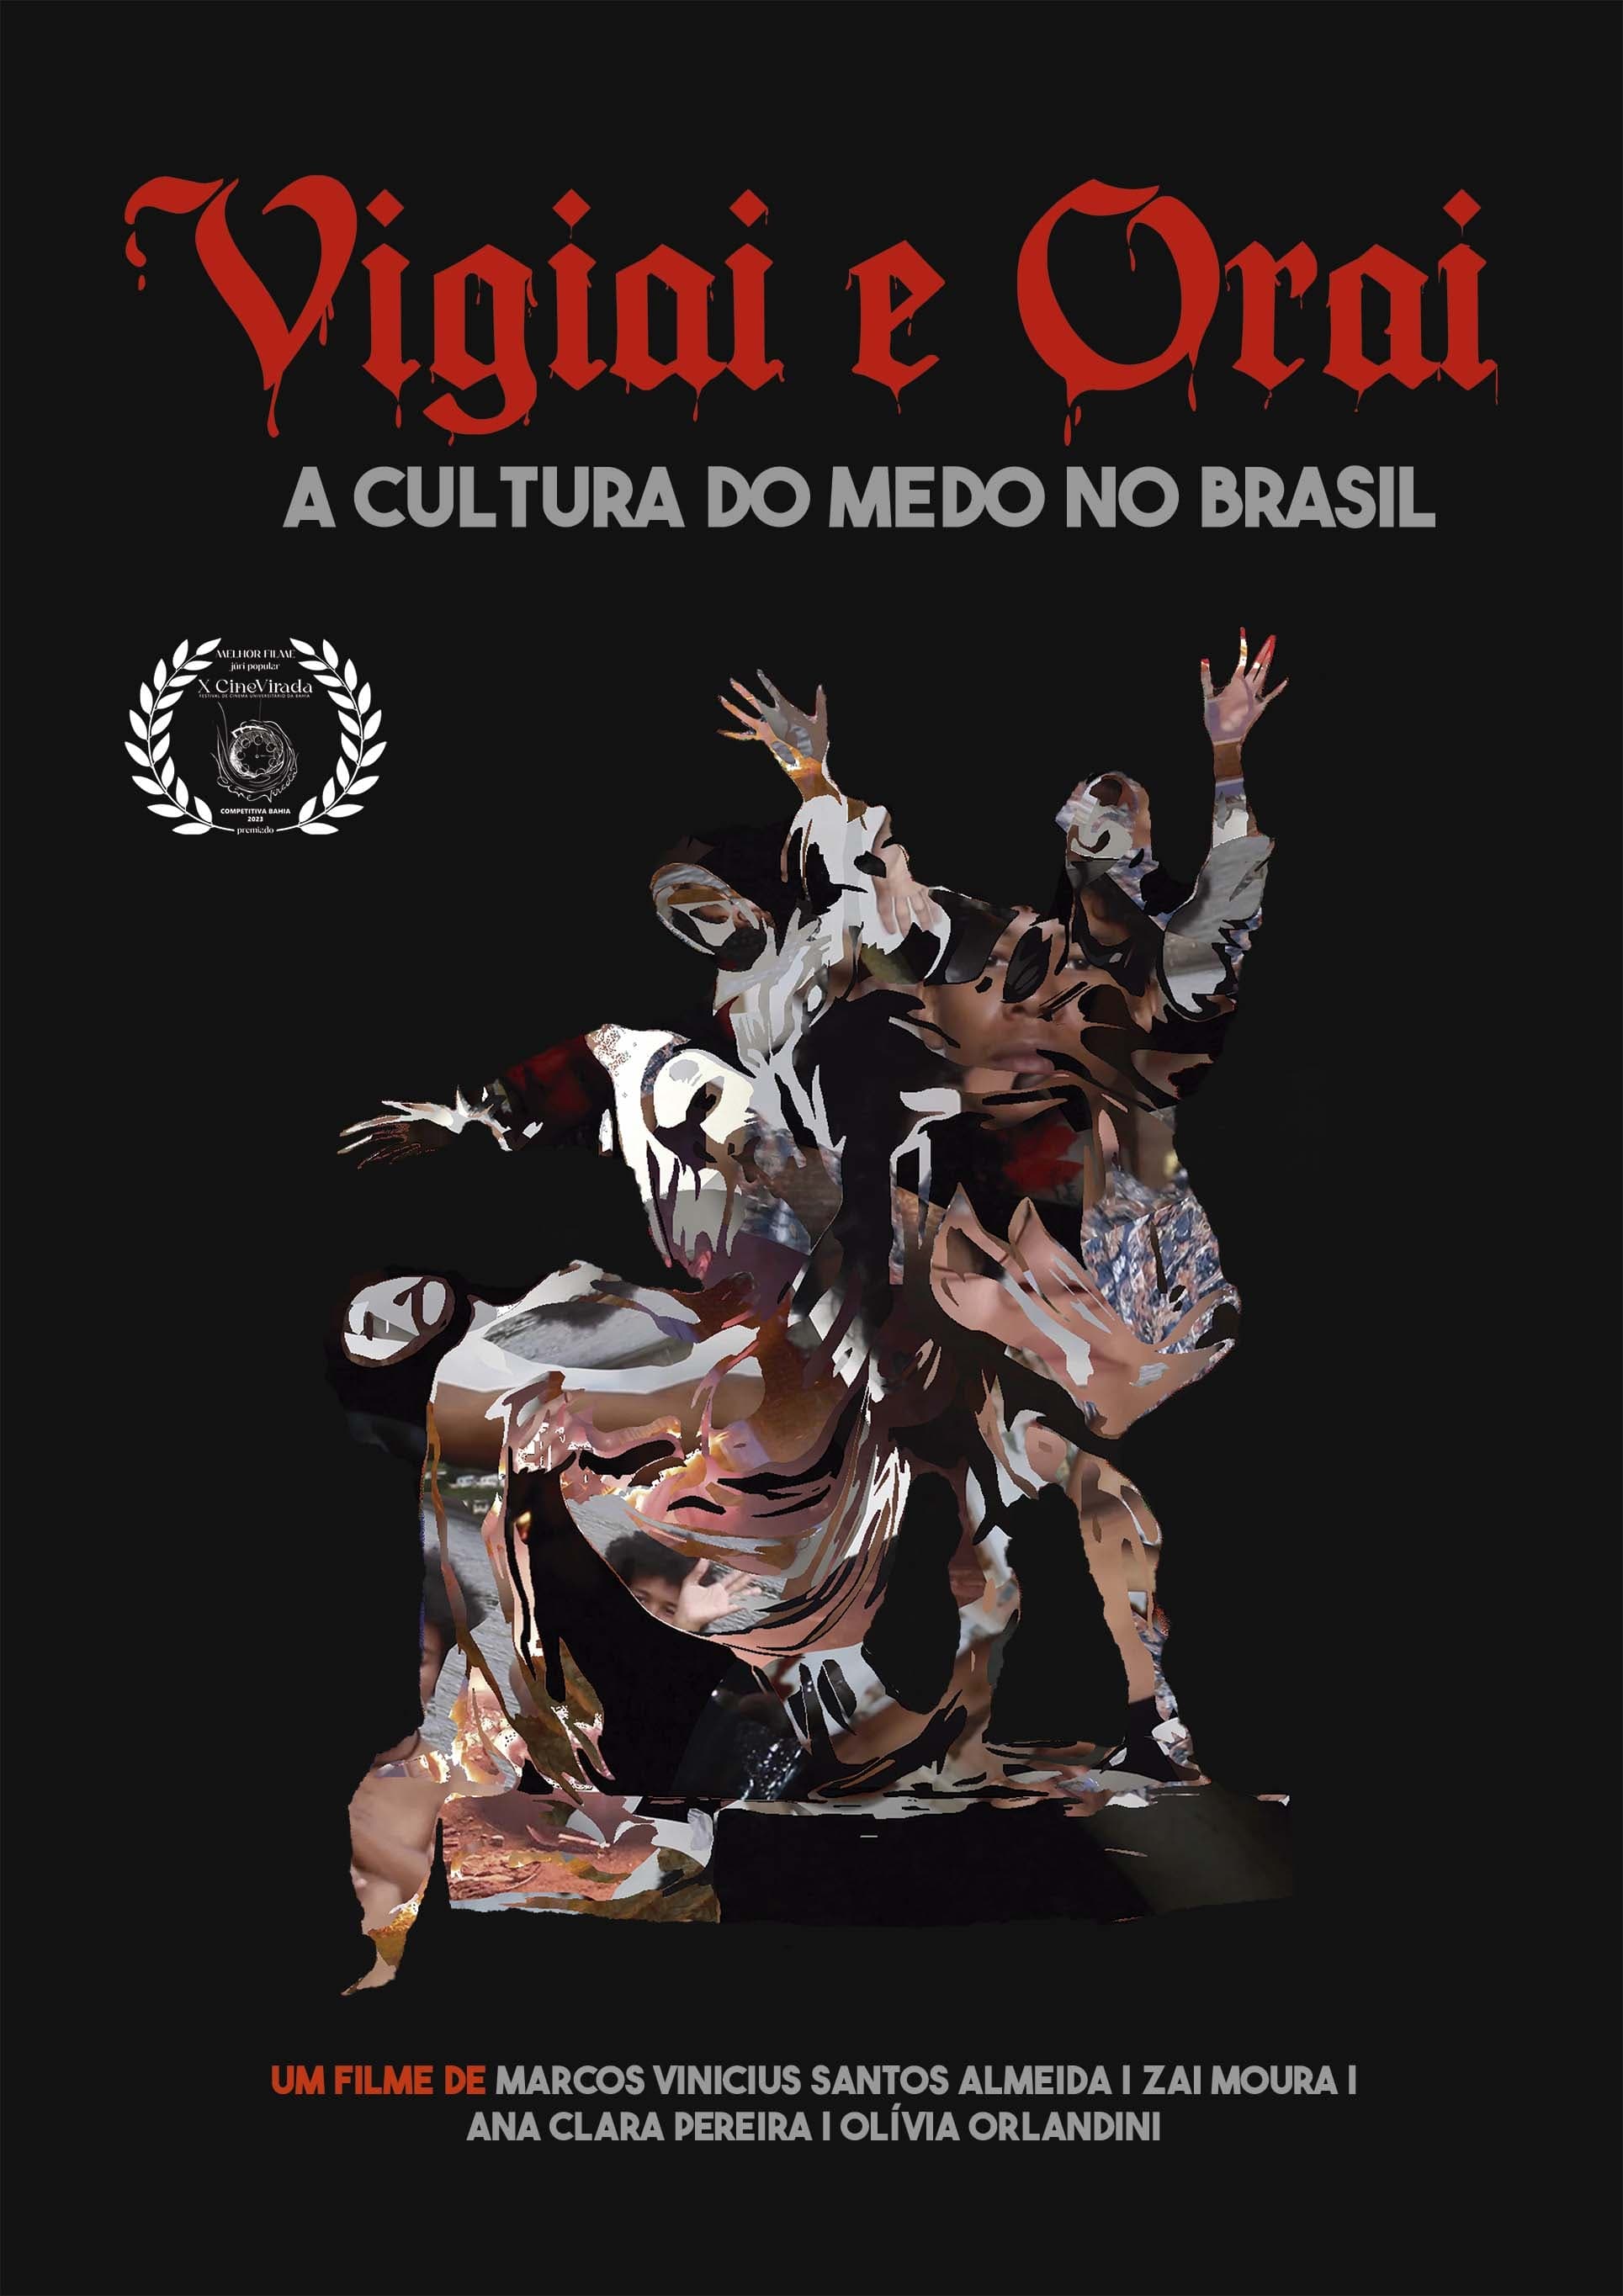 Vigiai e Orai - a cultura do medo no Brasil